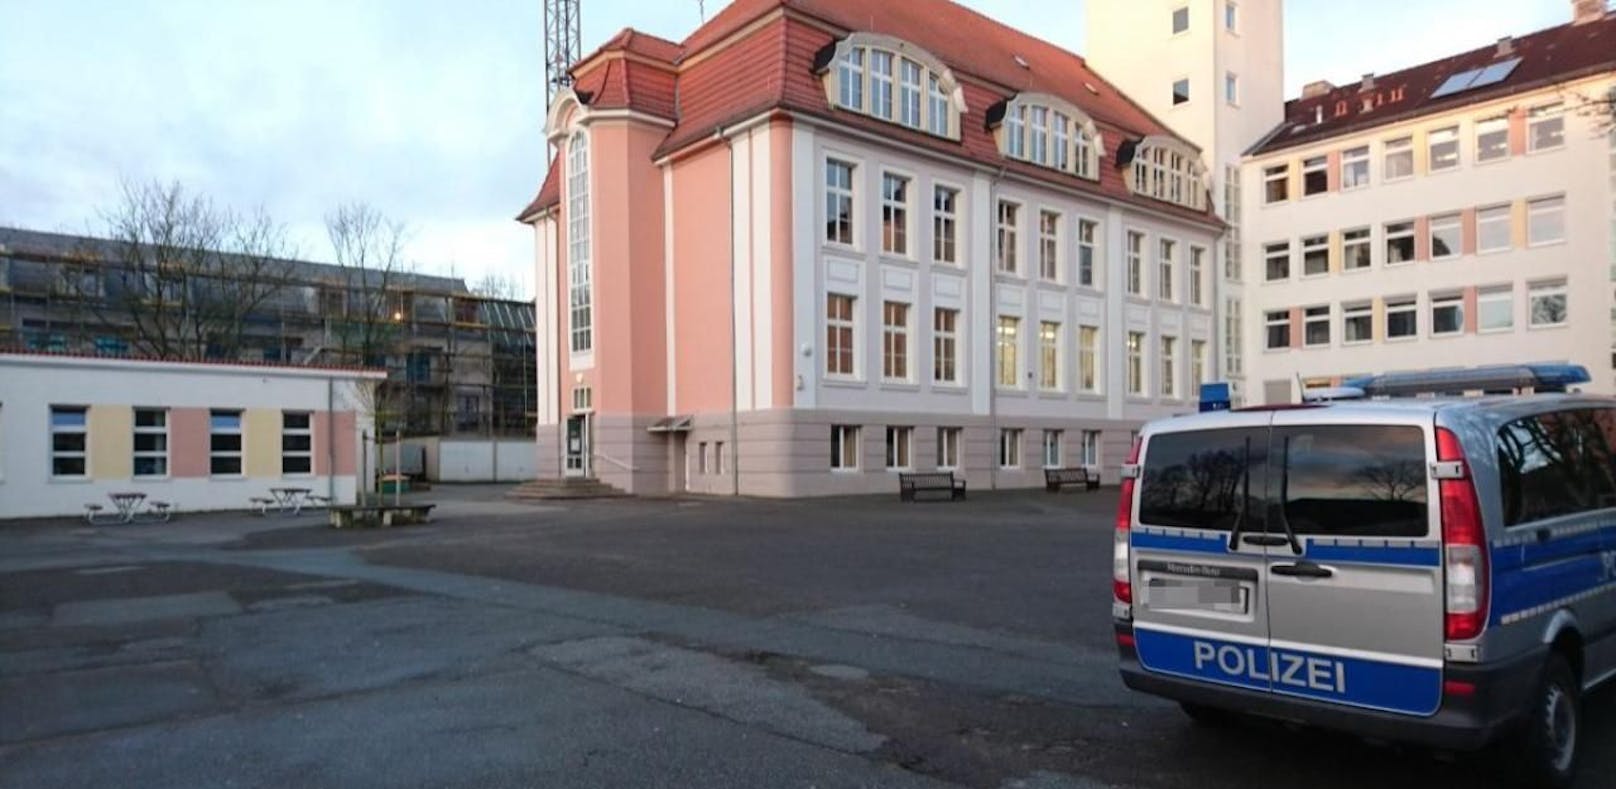 Entwarnung nach Bomben-Alarm an deutscher Schule